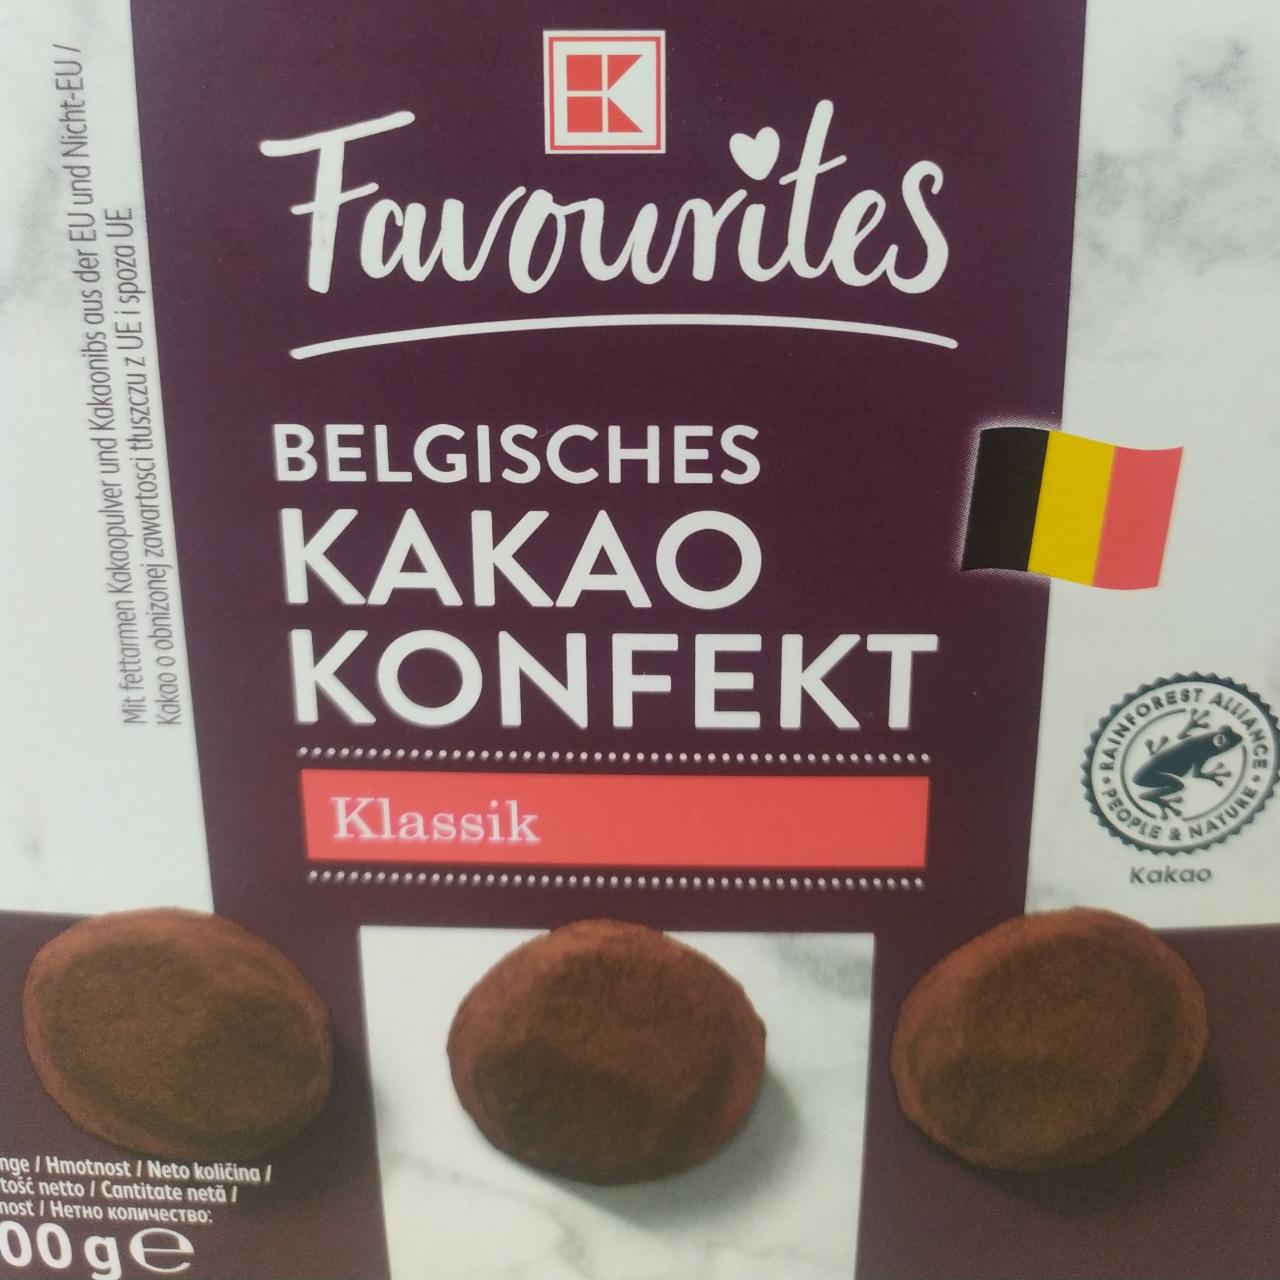 Fotografie - Belgisches Kakao Konfekt Klassik K-Favourites